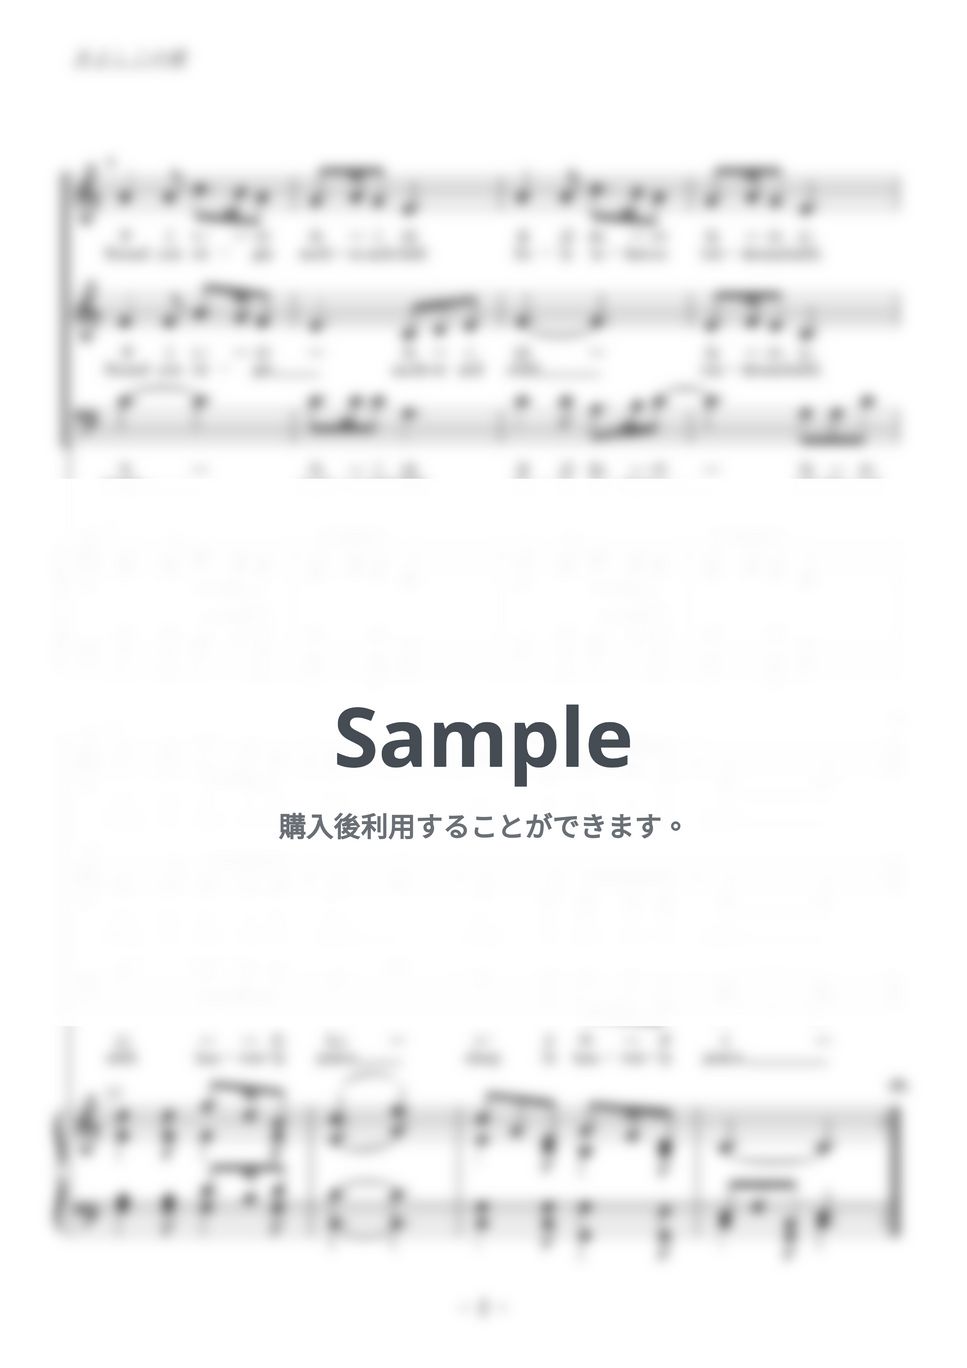 クリスマスソング - 聖夜 (混声三部合唱) by kiminabe